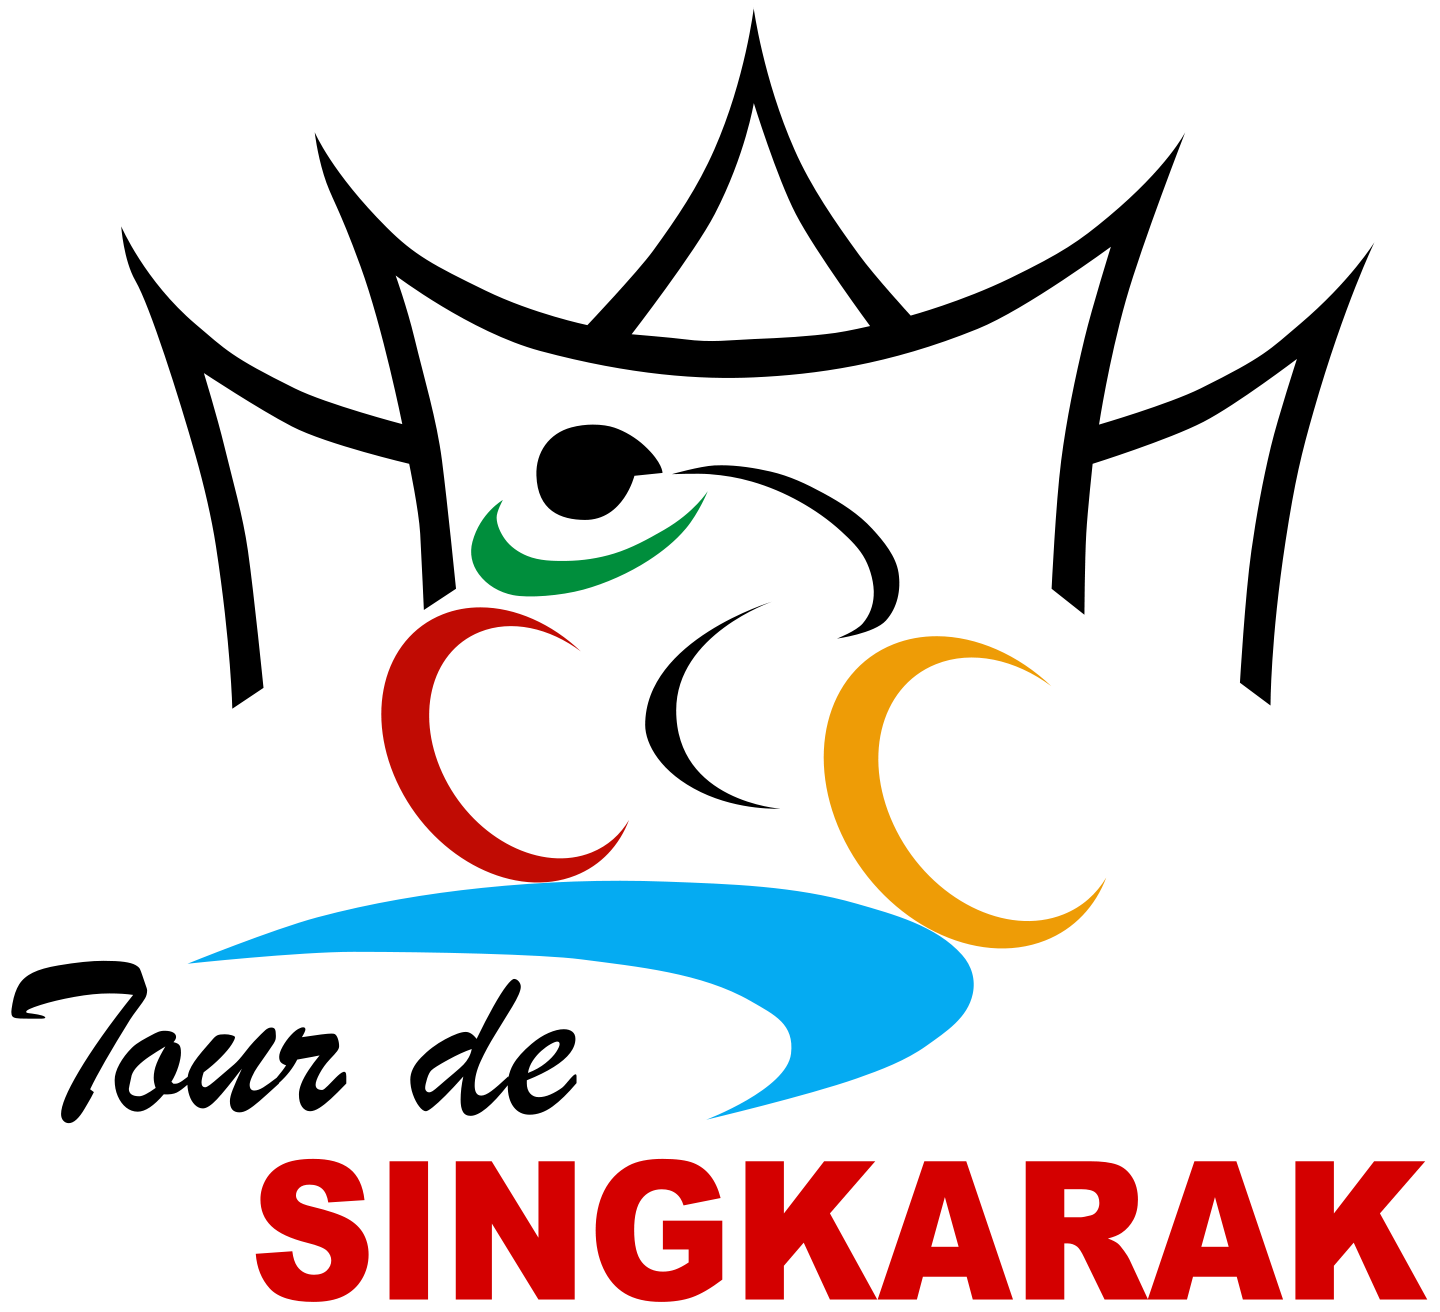  Tour De Singkarak tahun 2018 Etape 8 Pesisir Selatan